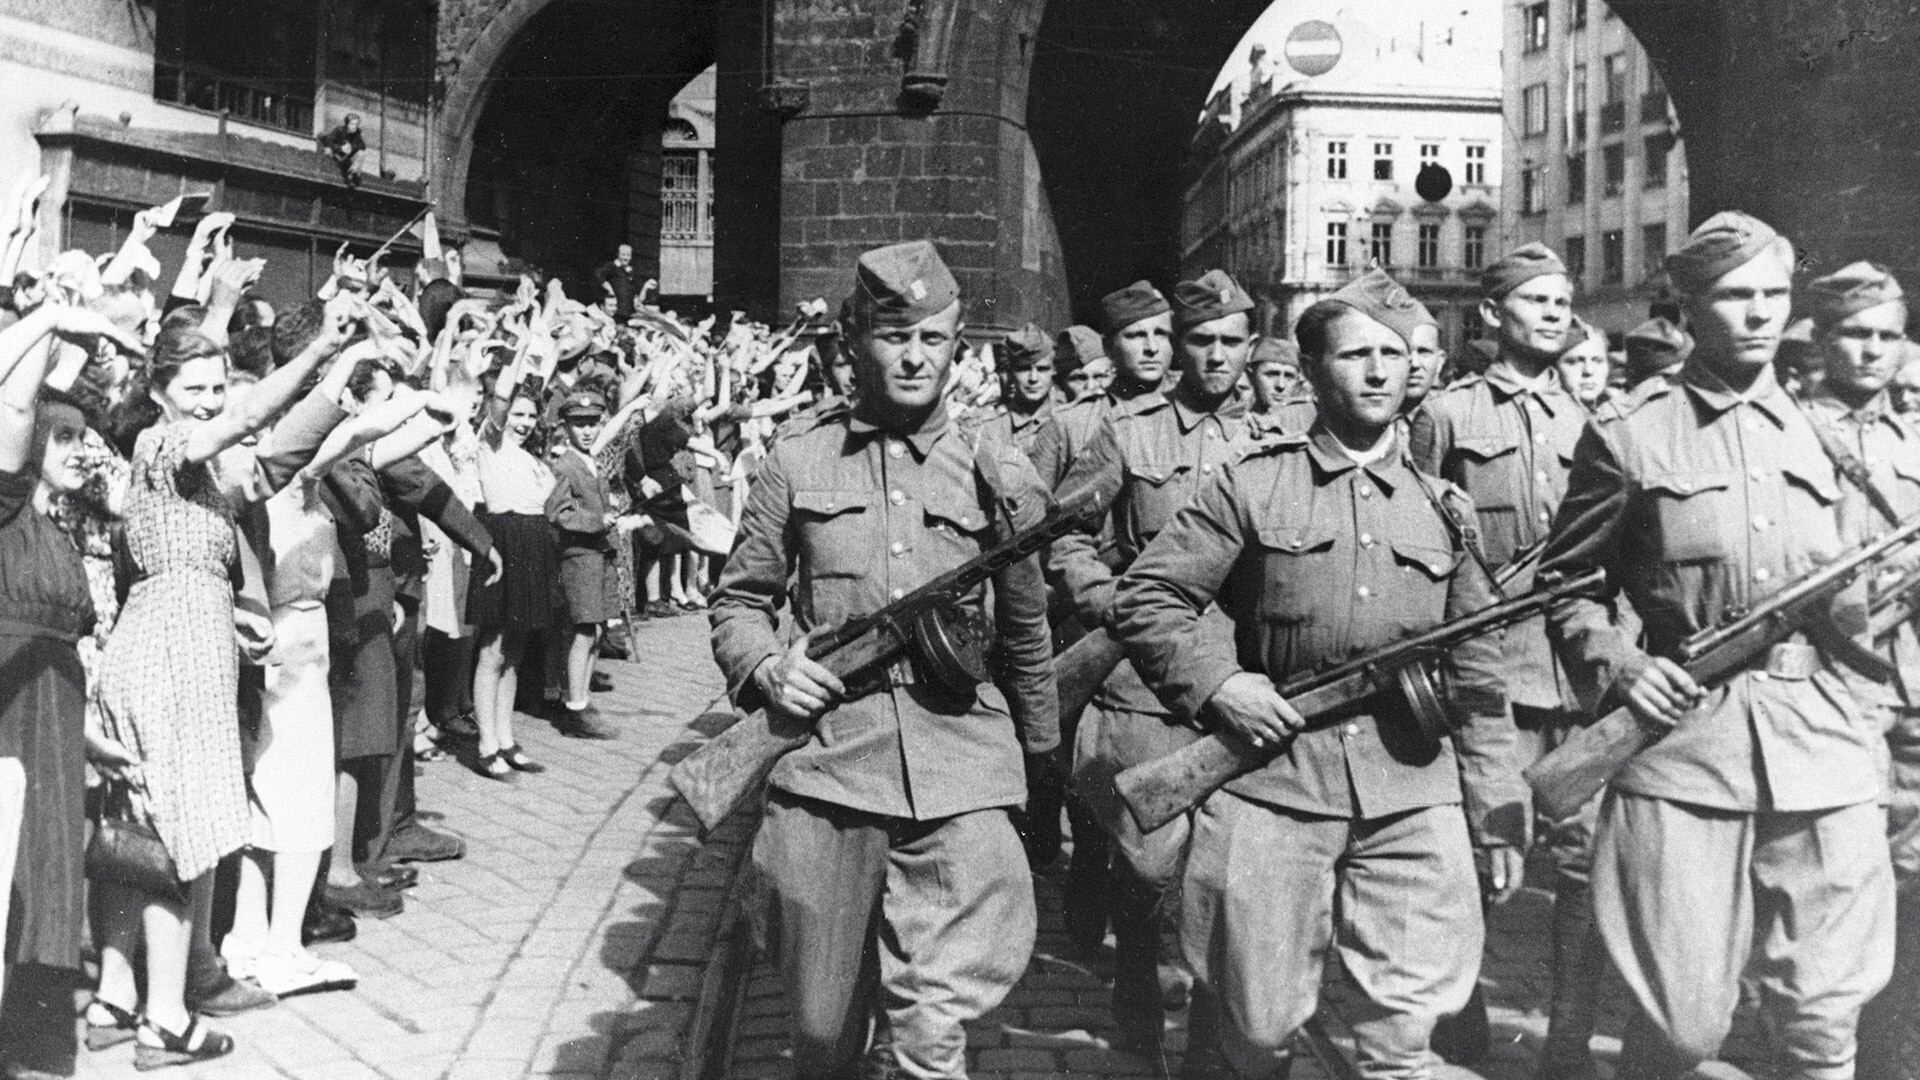 Des habitants de Prague accueillent les soldats du corps tchécoslovaque, qui ont participé avec l'armée soviétique à la libération de leur pays des nazis